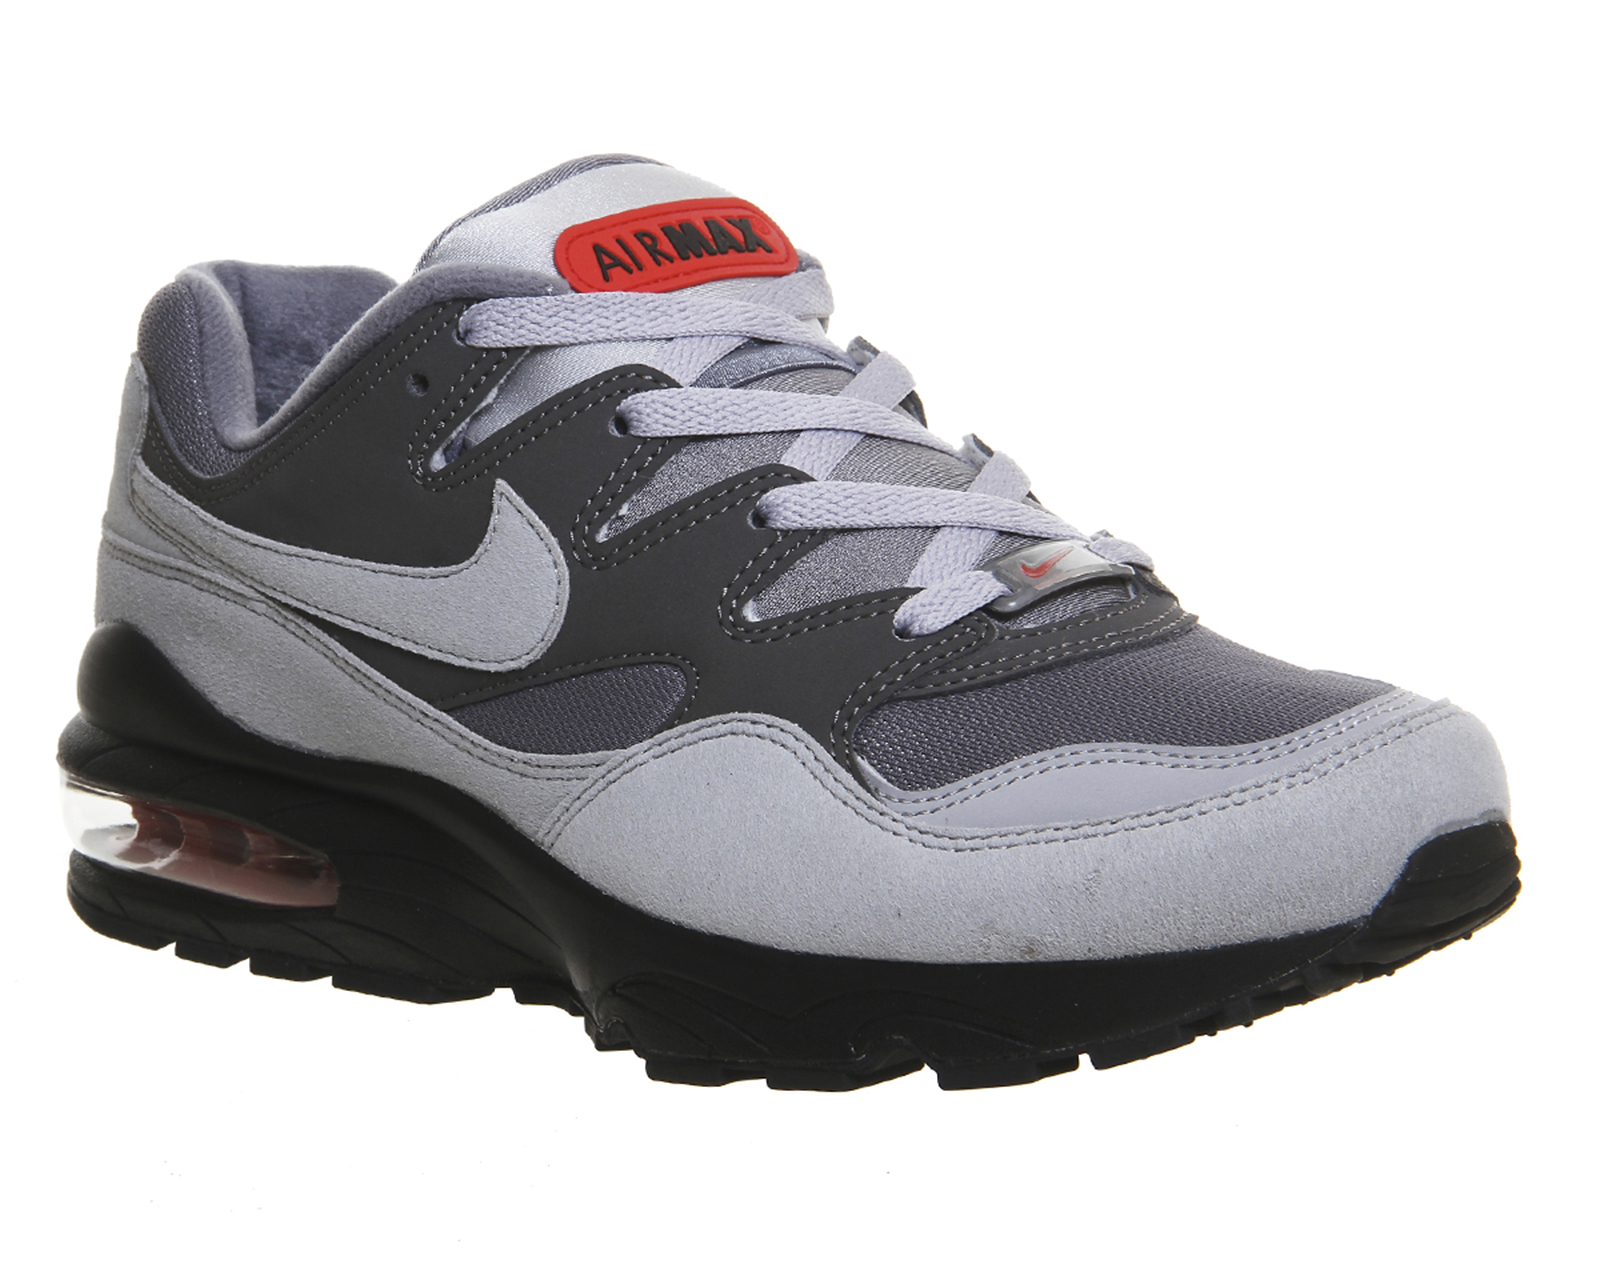 NikeAir Max 94 PrmWolf Grey